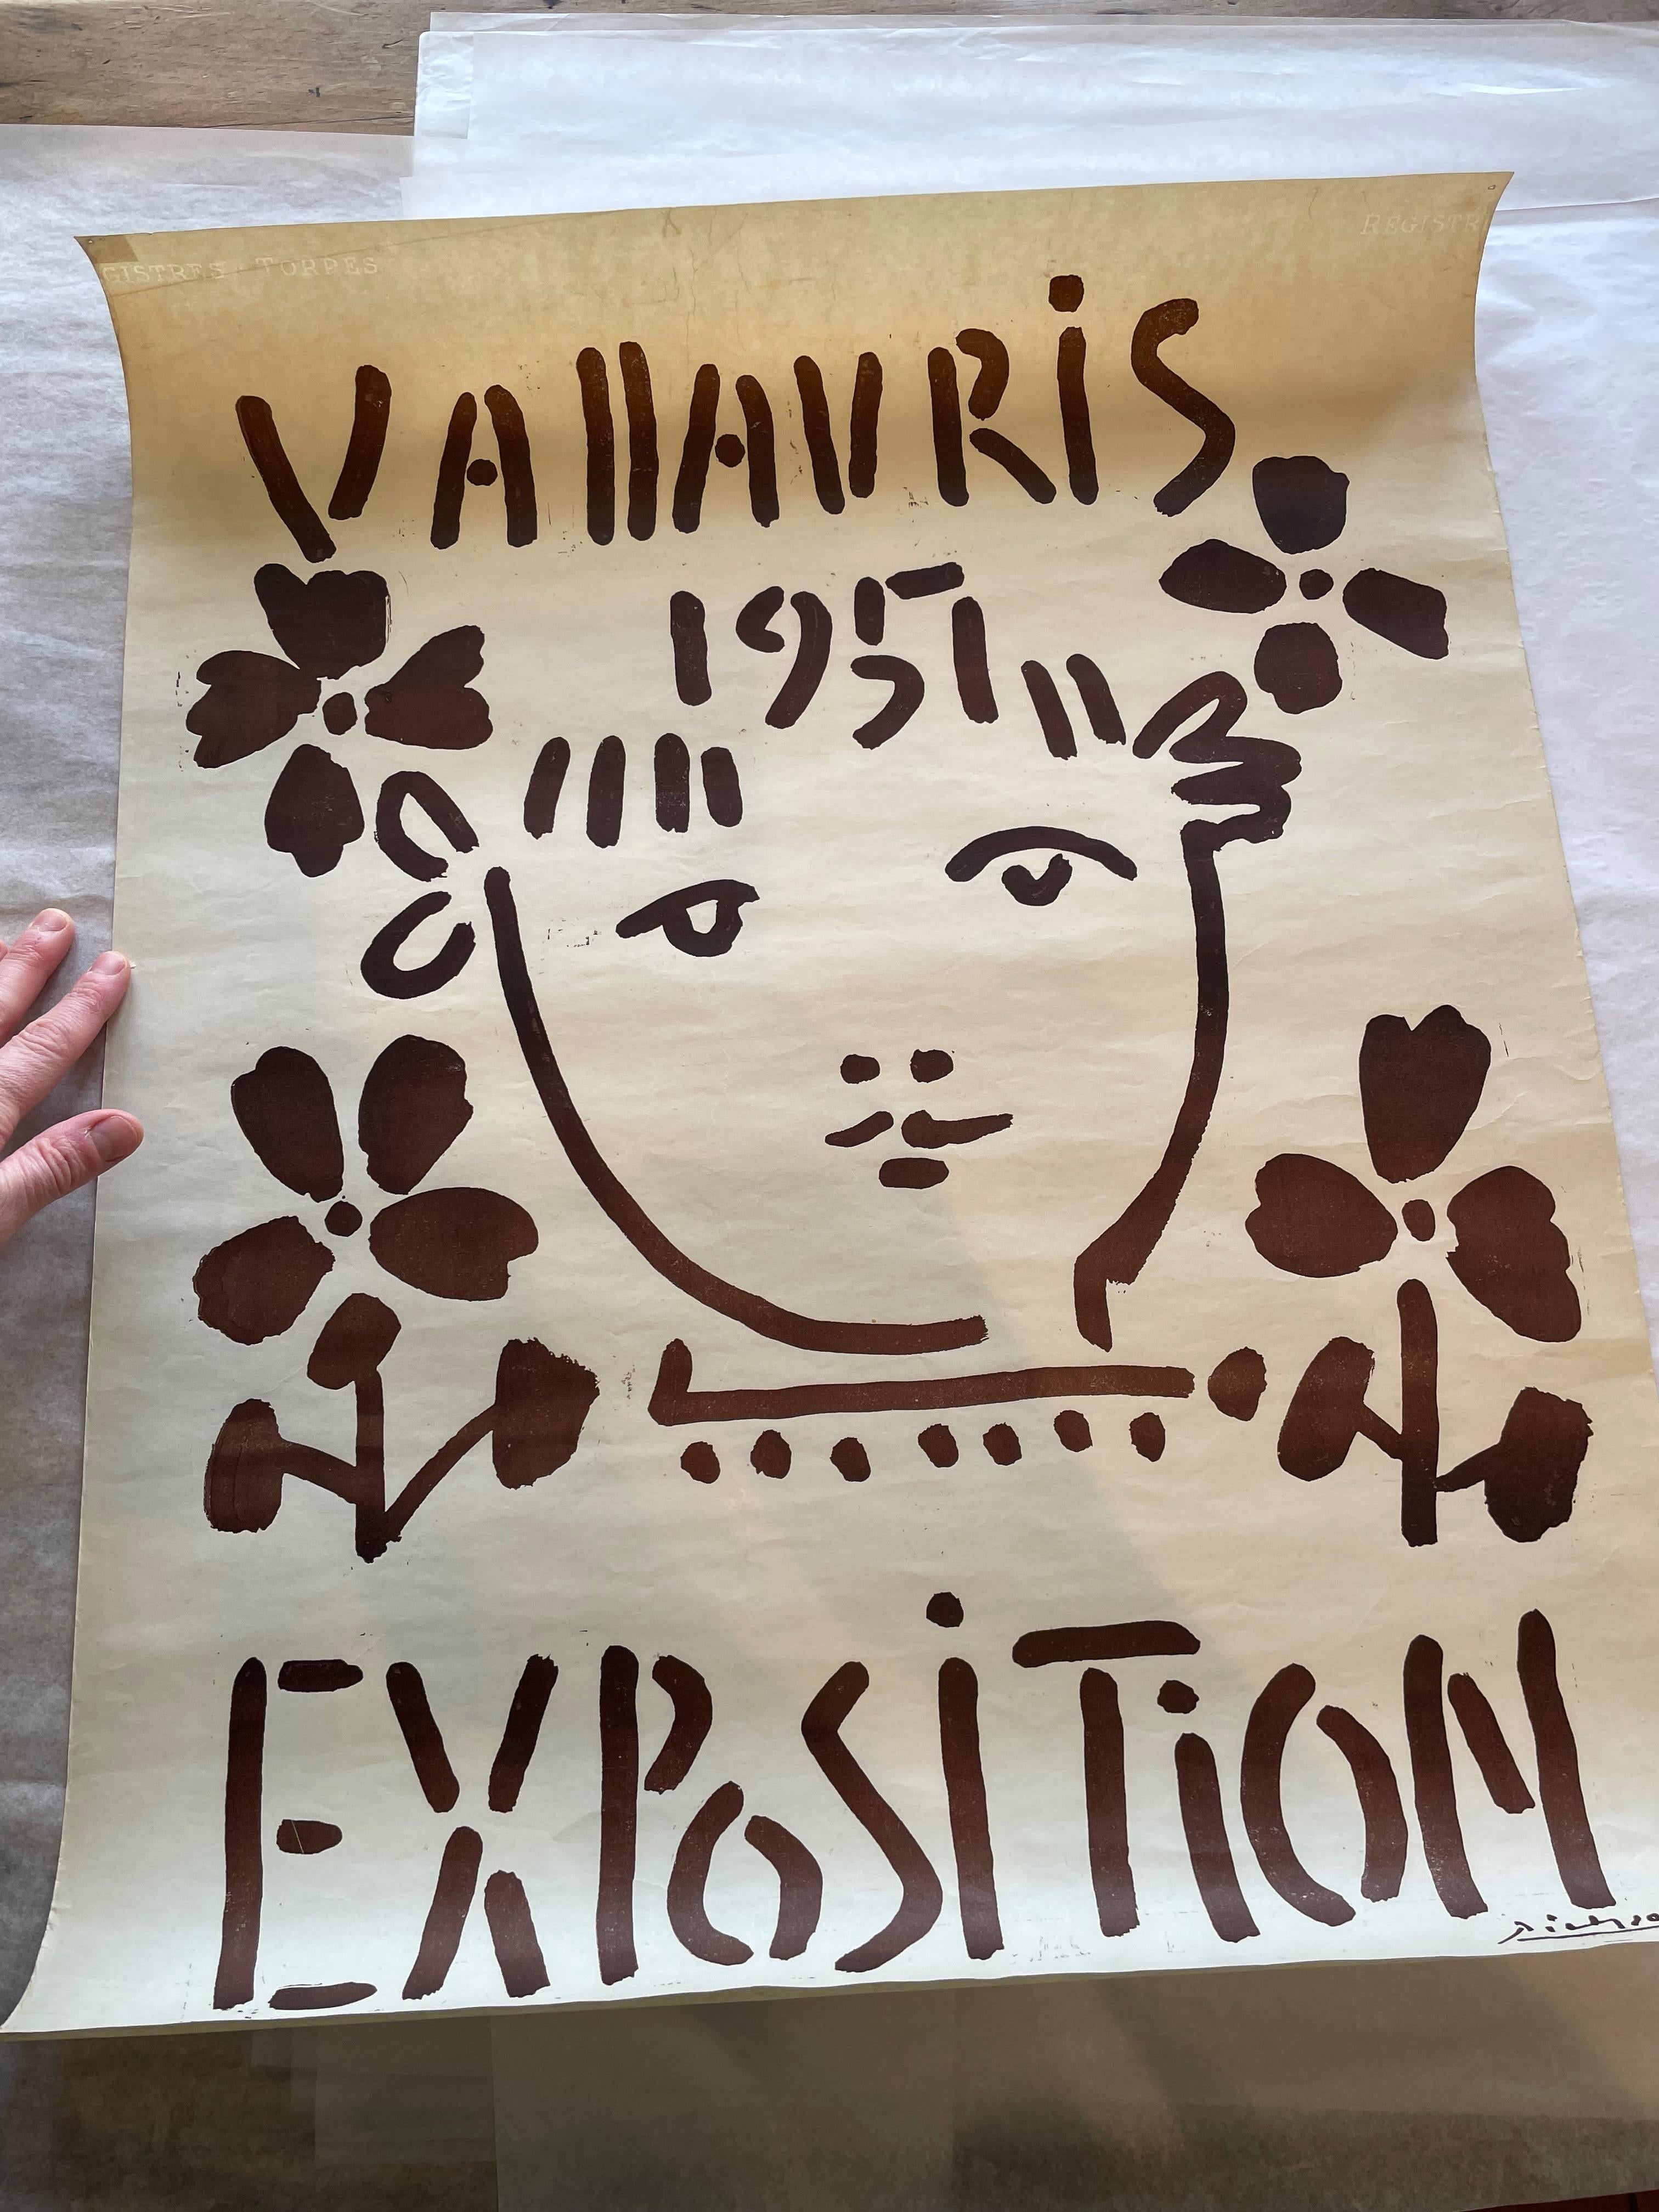 Künstler: Pablo Picasso

Titel: Ausstellung Vallauris 1951, 1951

Datum: 1951

Medium: Linolschnitt

Drucker: Hidalgo Arnera

Größe: 65 x 50 cm

Signiert: In der Platte.